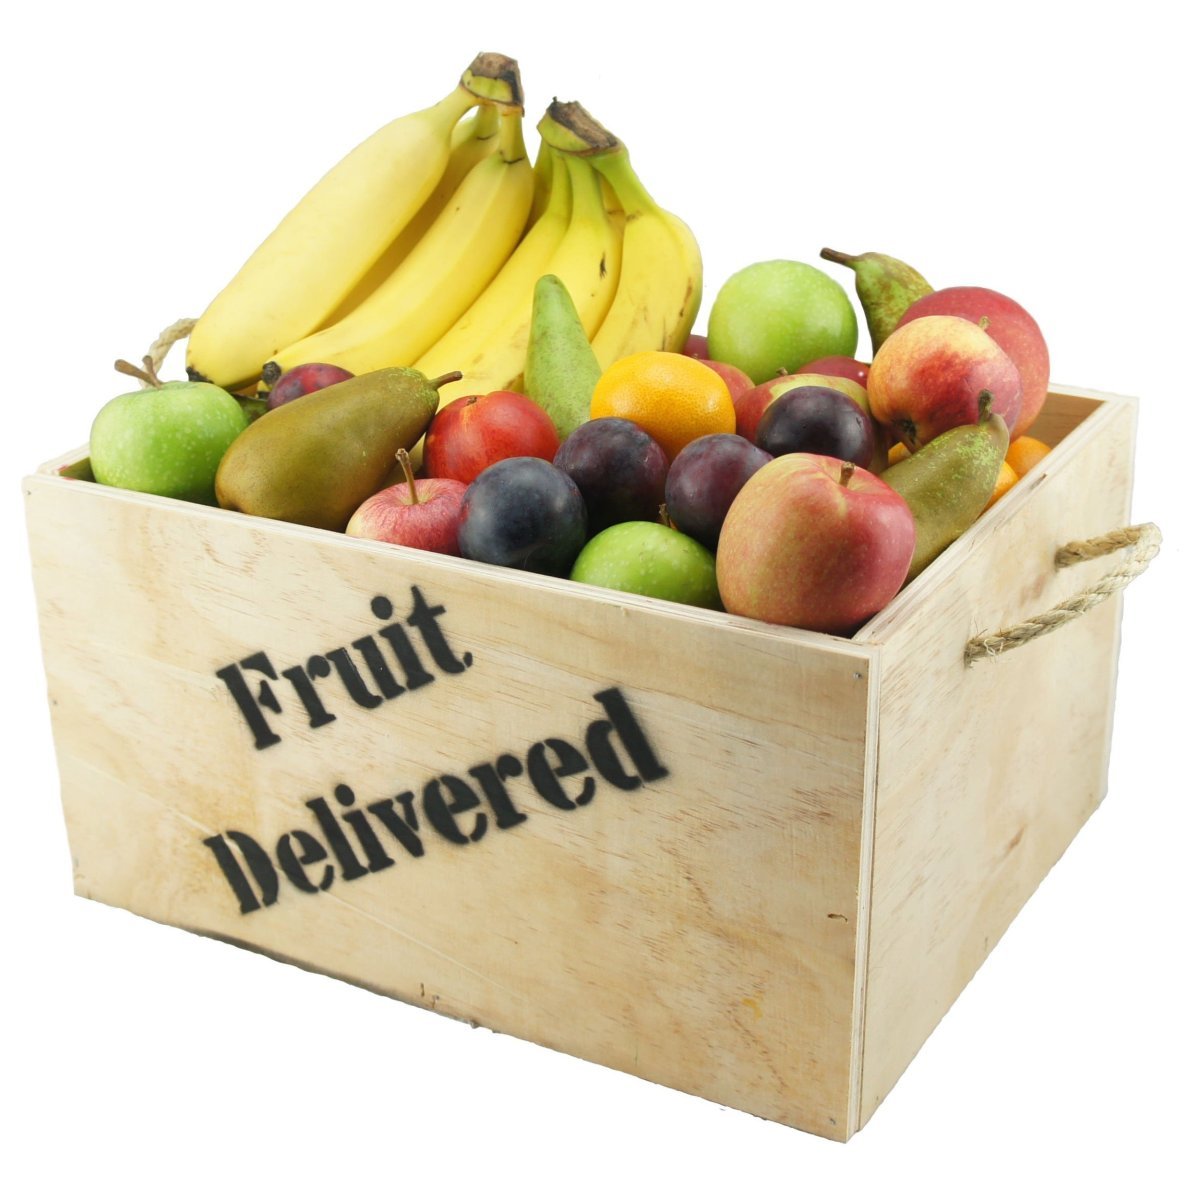 Блокс фрукт цены фруктов в трейде. Фрукты Блокс Фрут. Овощи и фрукты. Тир фруктов в Блокс Фрут. Бокс с фруктами.